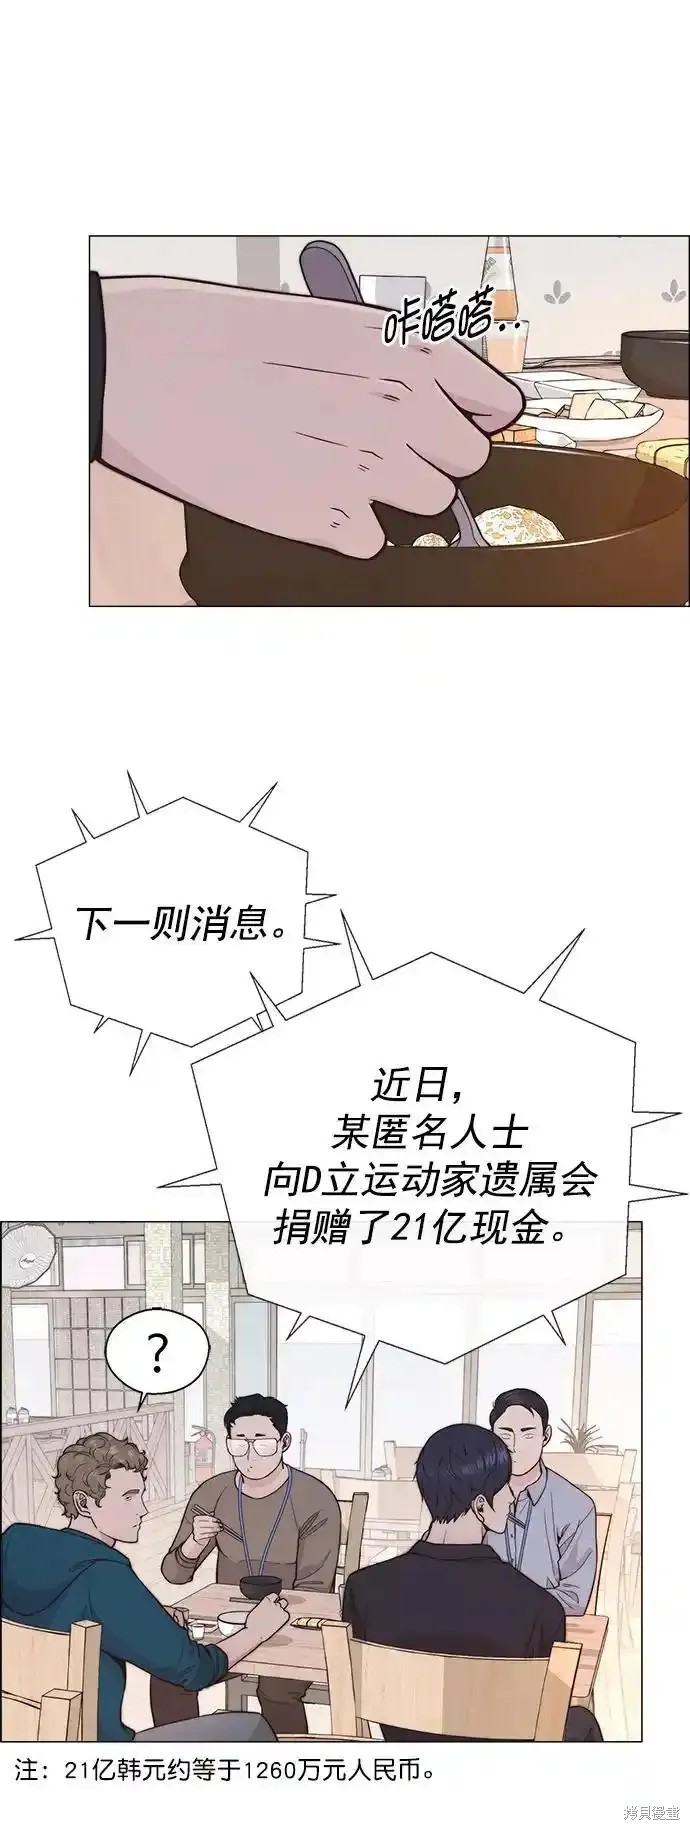 男子汉漫画,第177话2图